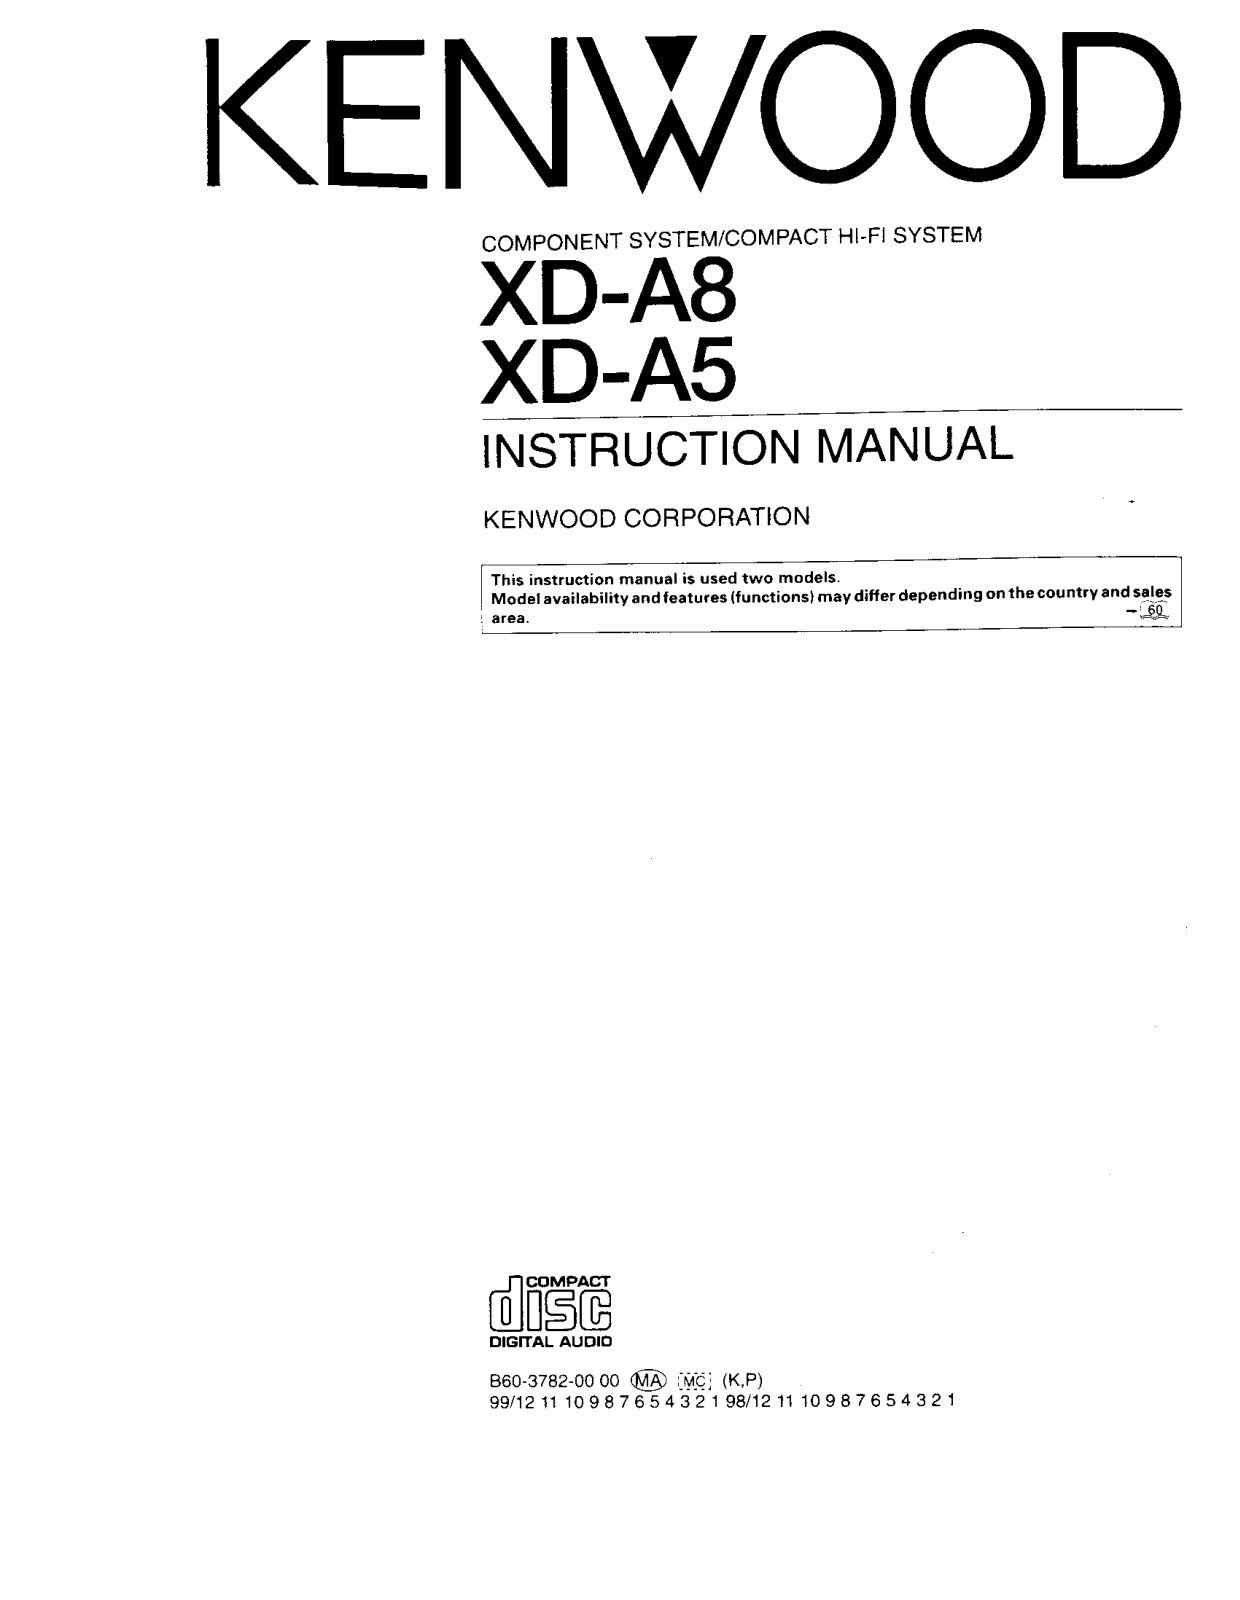 Kenwood XD-A5, XD-A8, RXD-A8, LS-N701, LS-N751 Owner's Manual